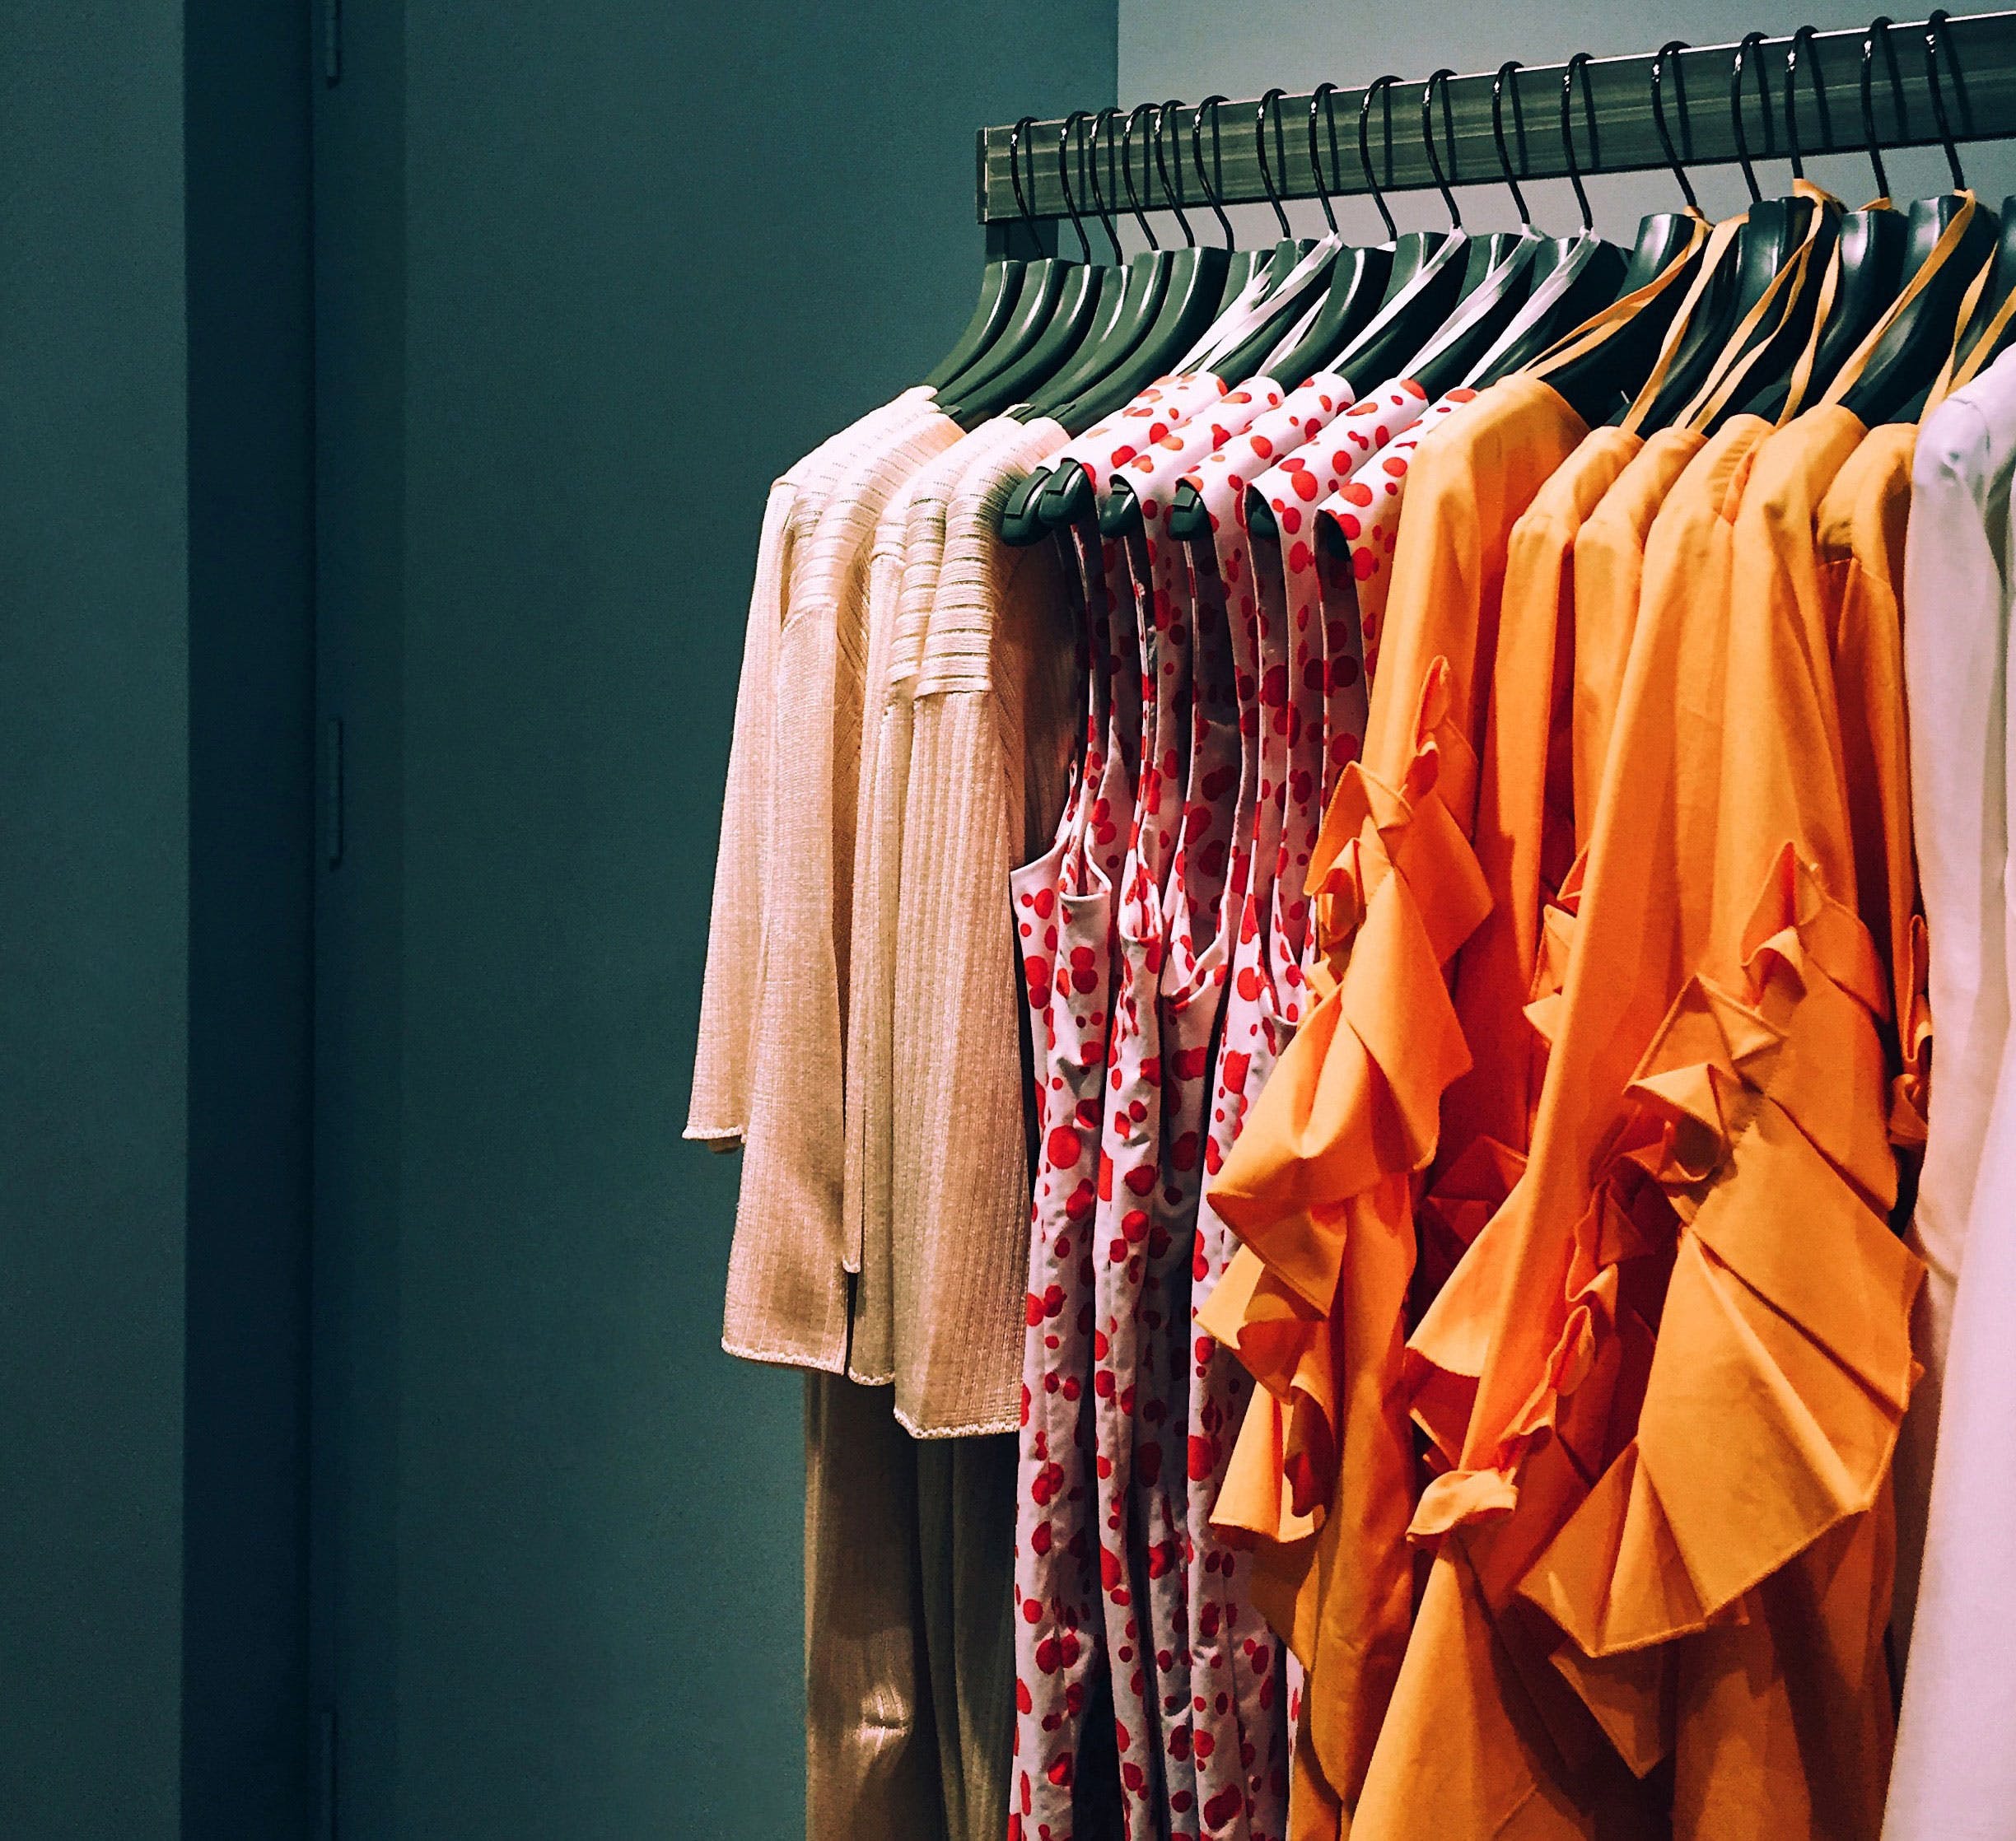 Clothes hanger,Clothing,Orange,Room,Textile,Closet,Boutique,Dress,Home accessories,Fashion design